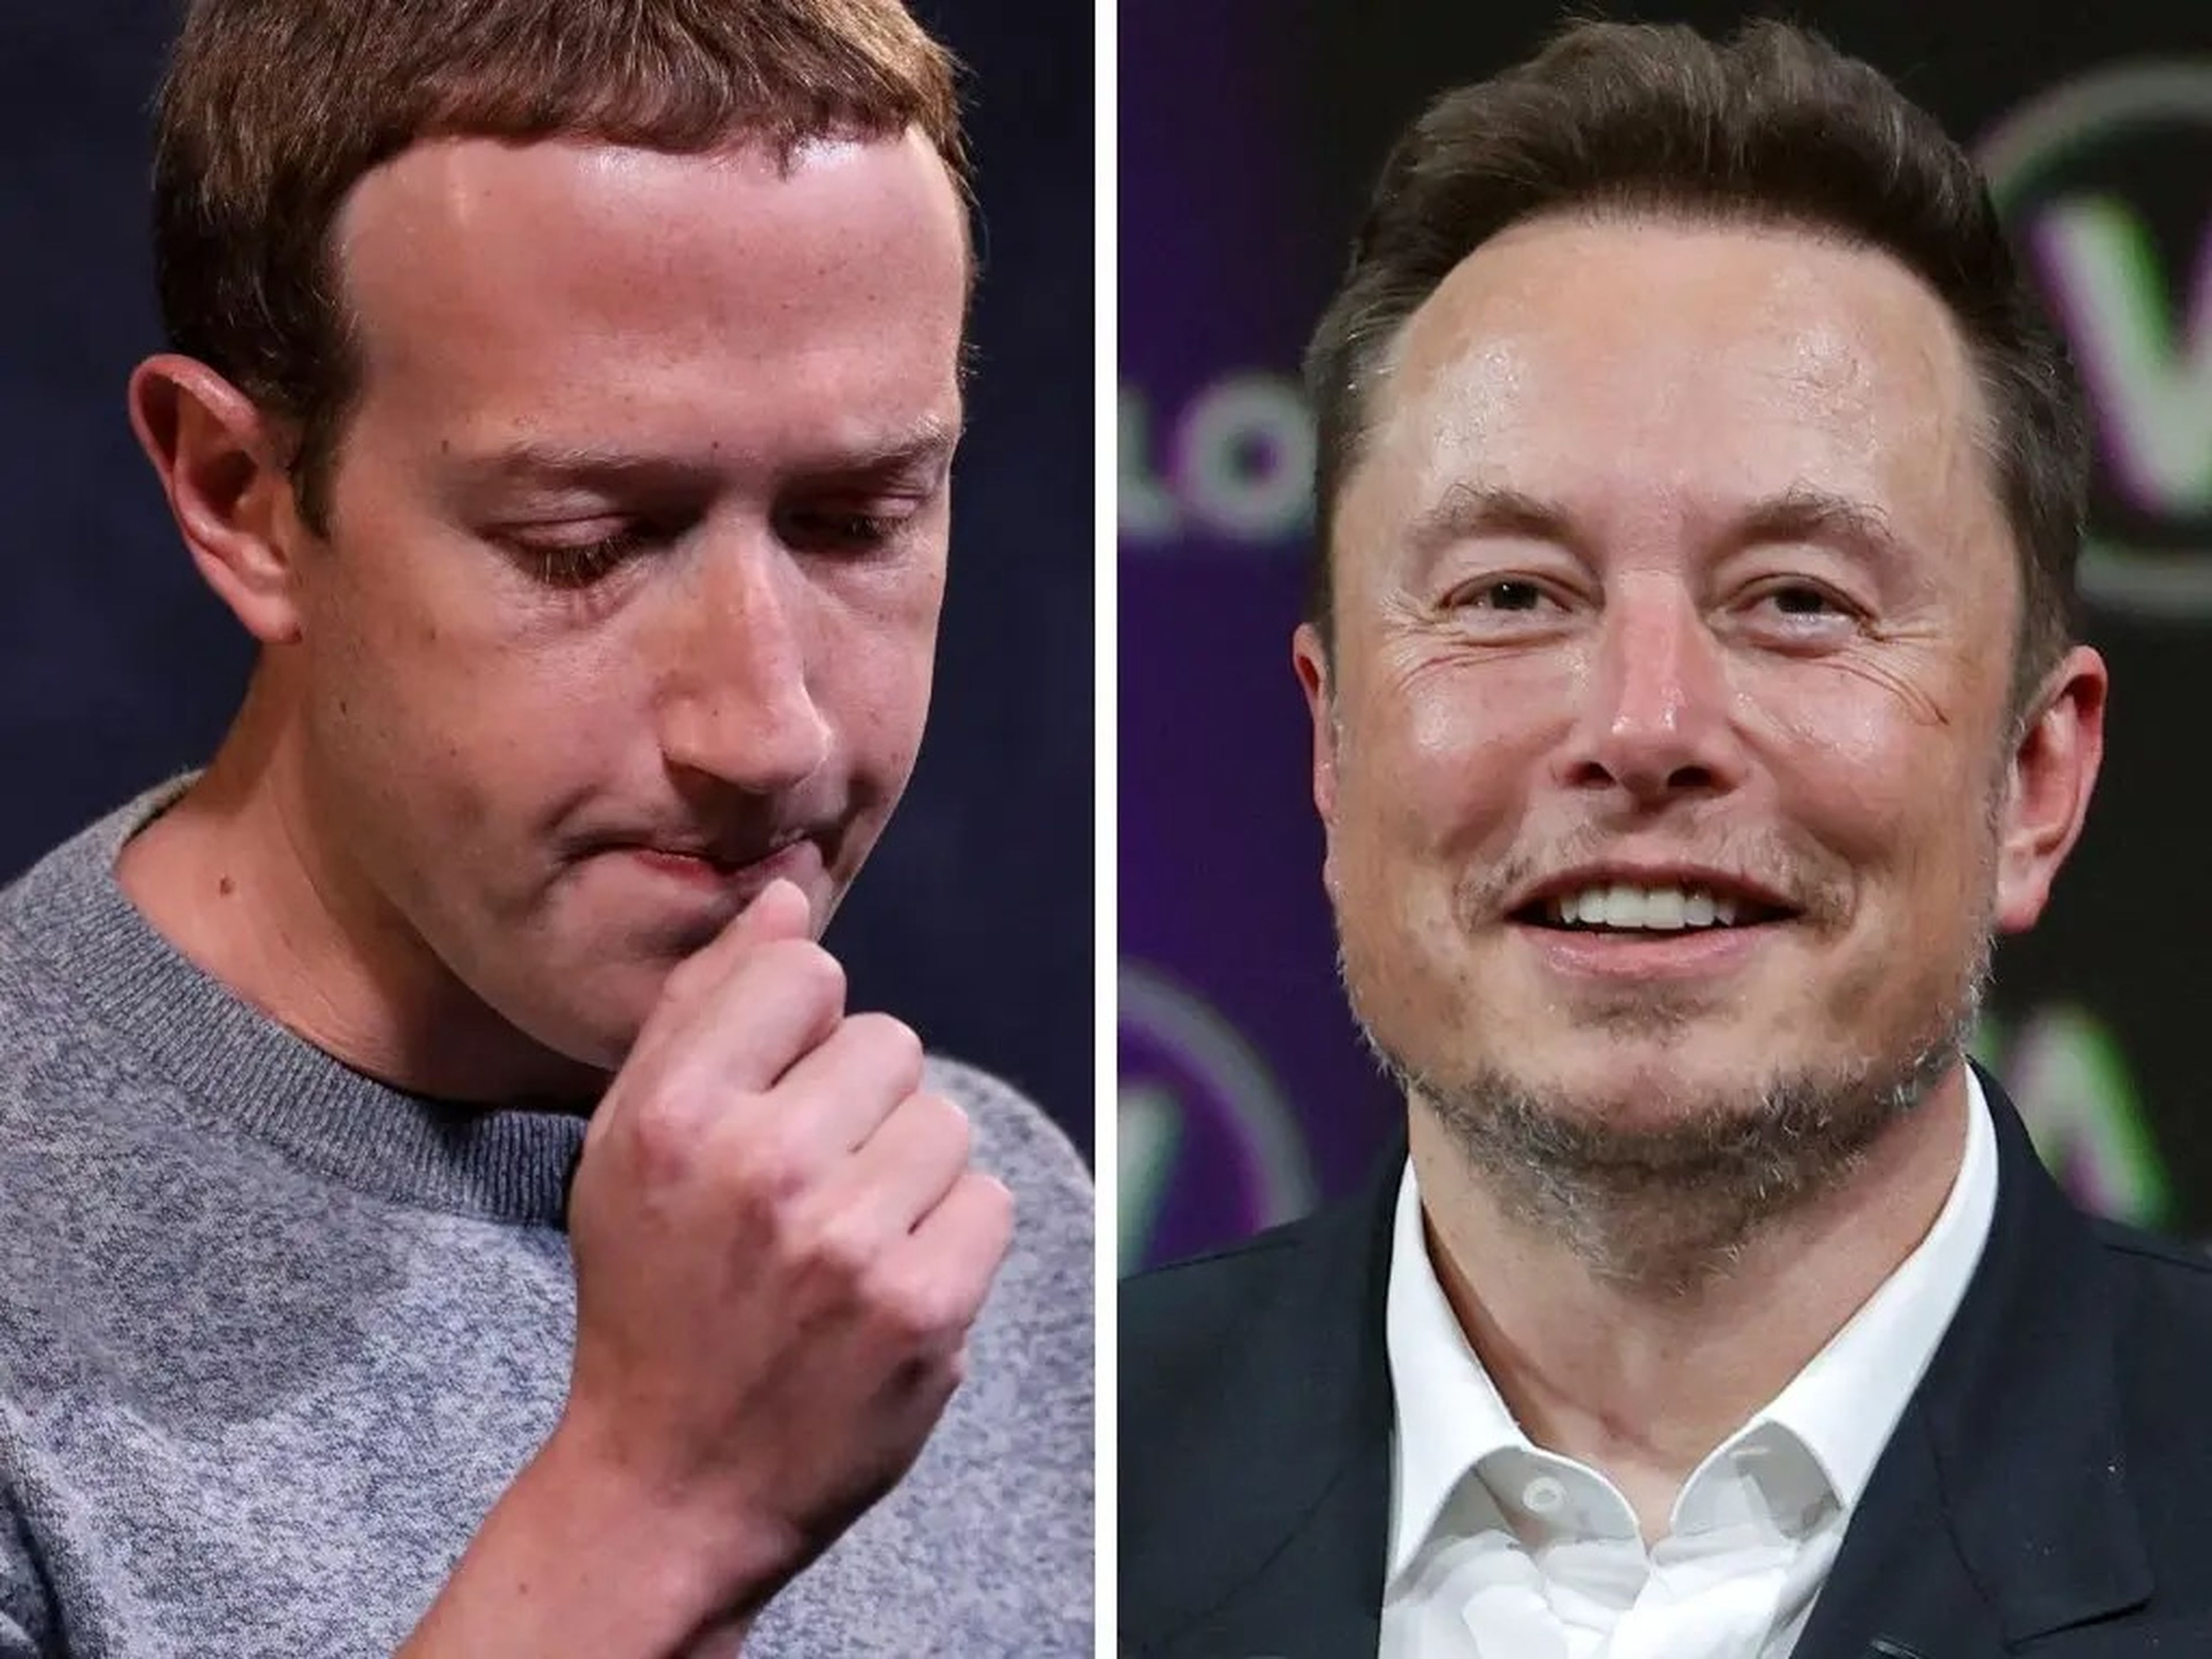 Mark Zuckerberg (left) and Elon Musk (right).